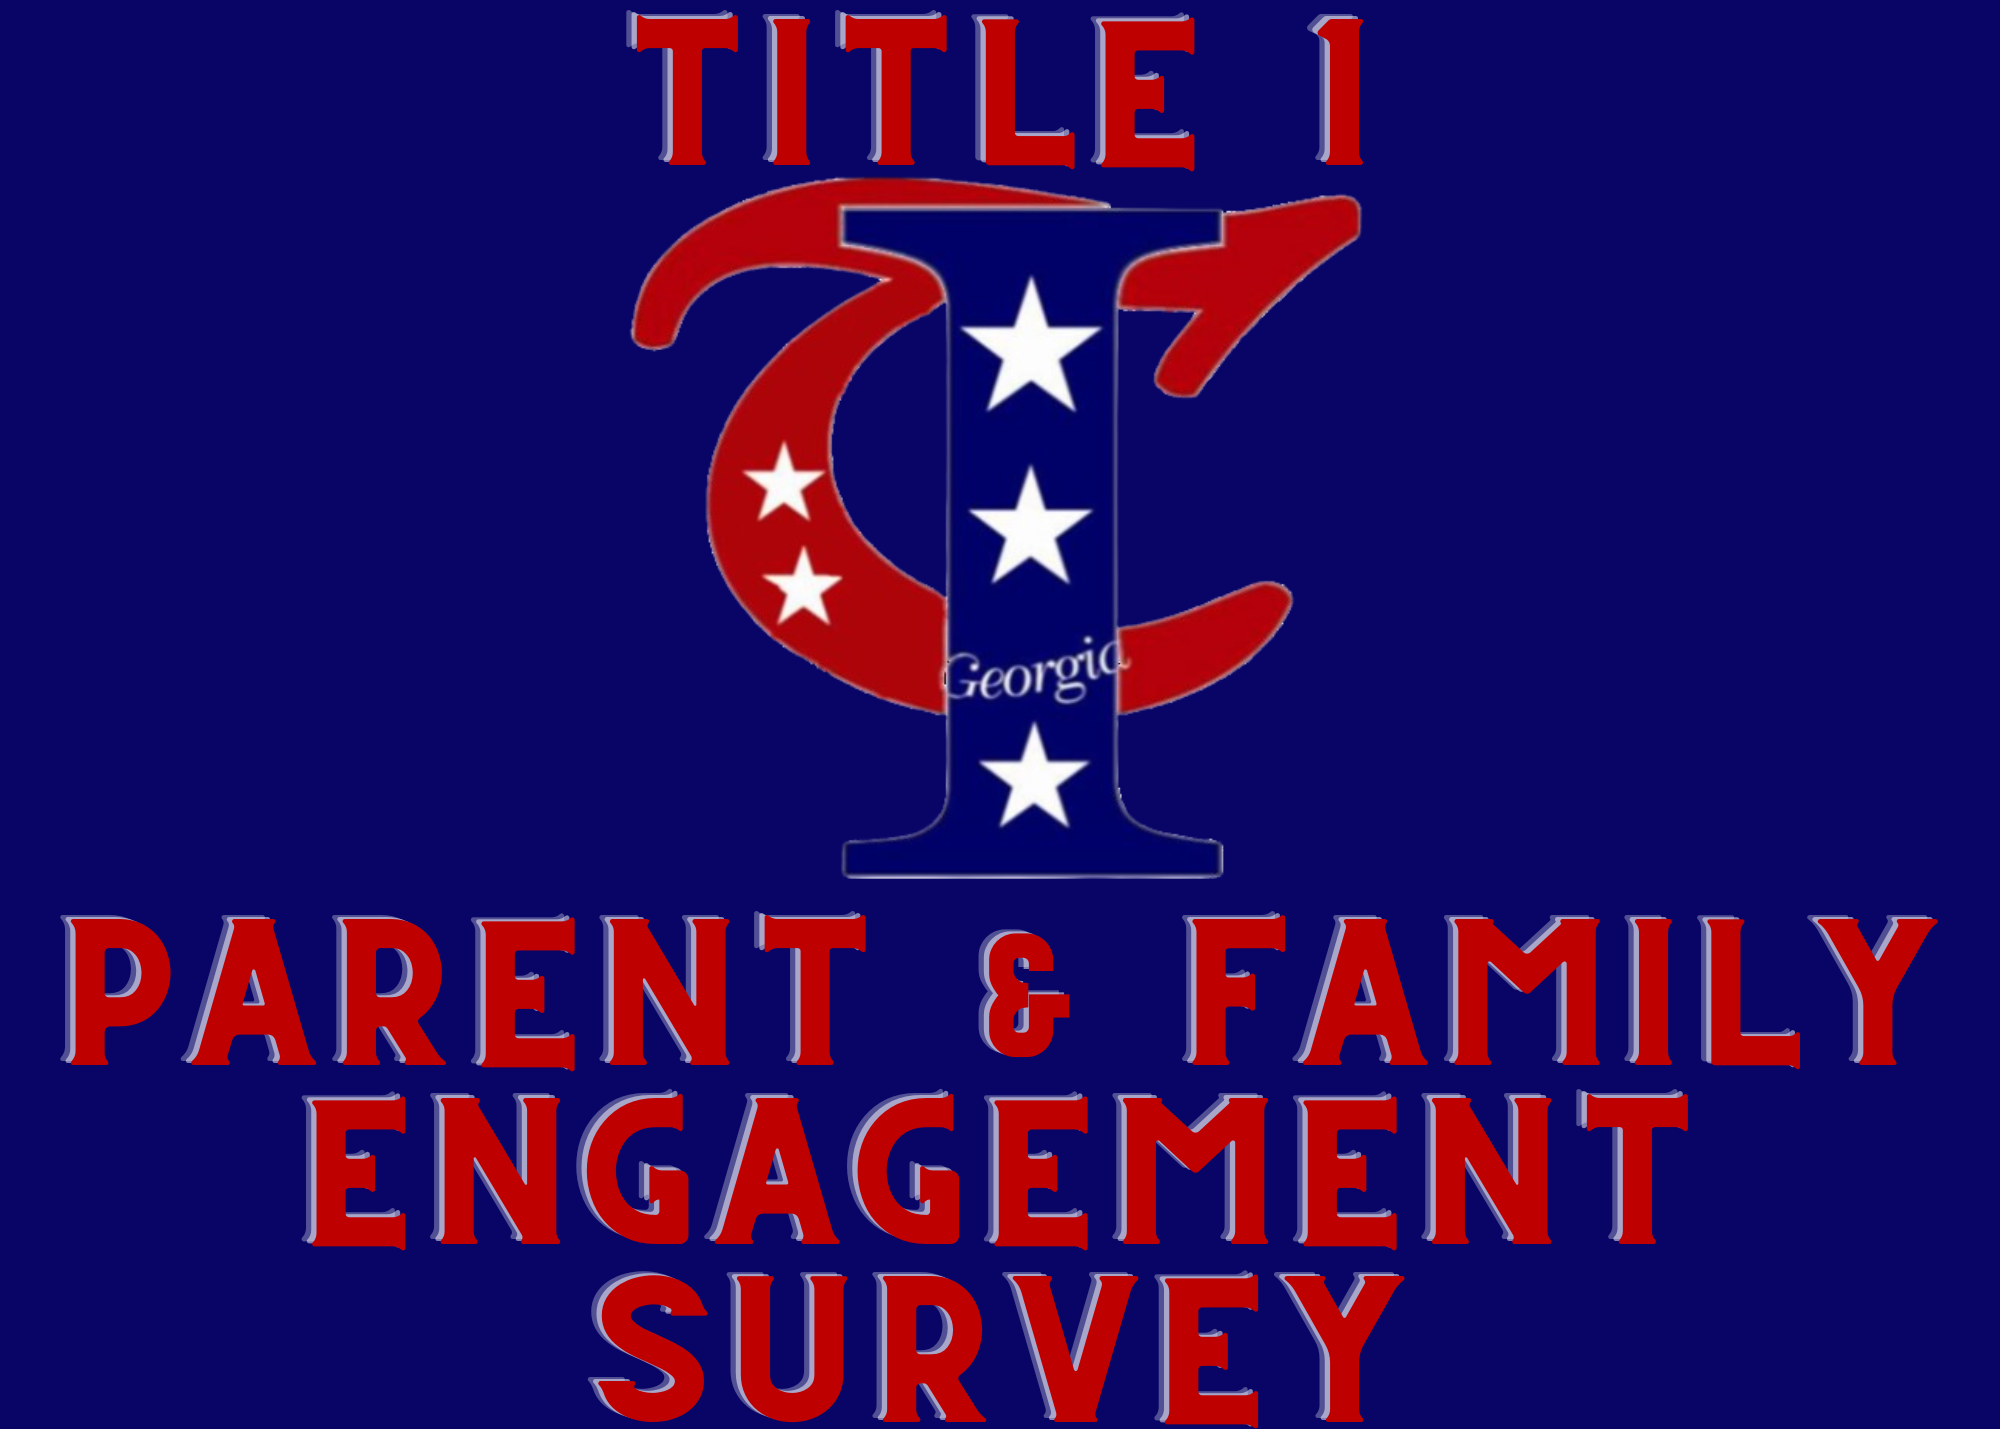 Title 1 Survey